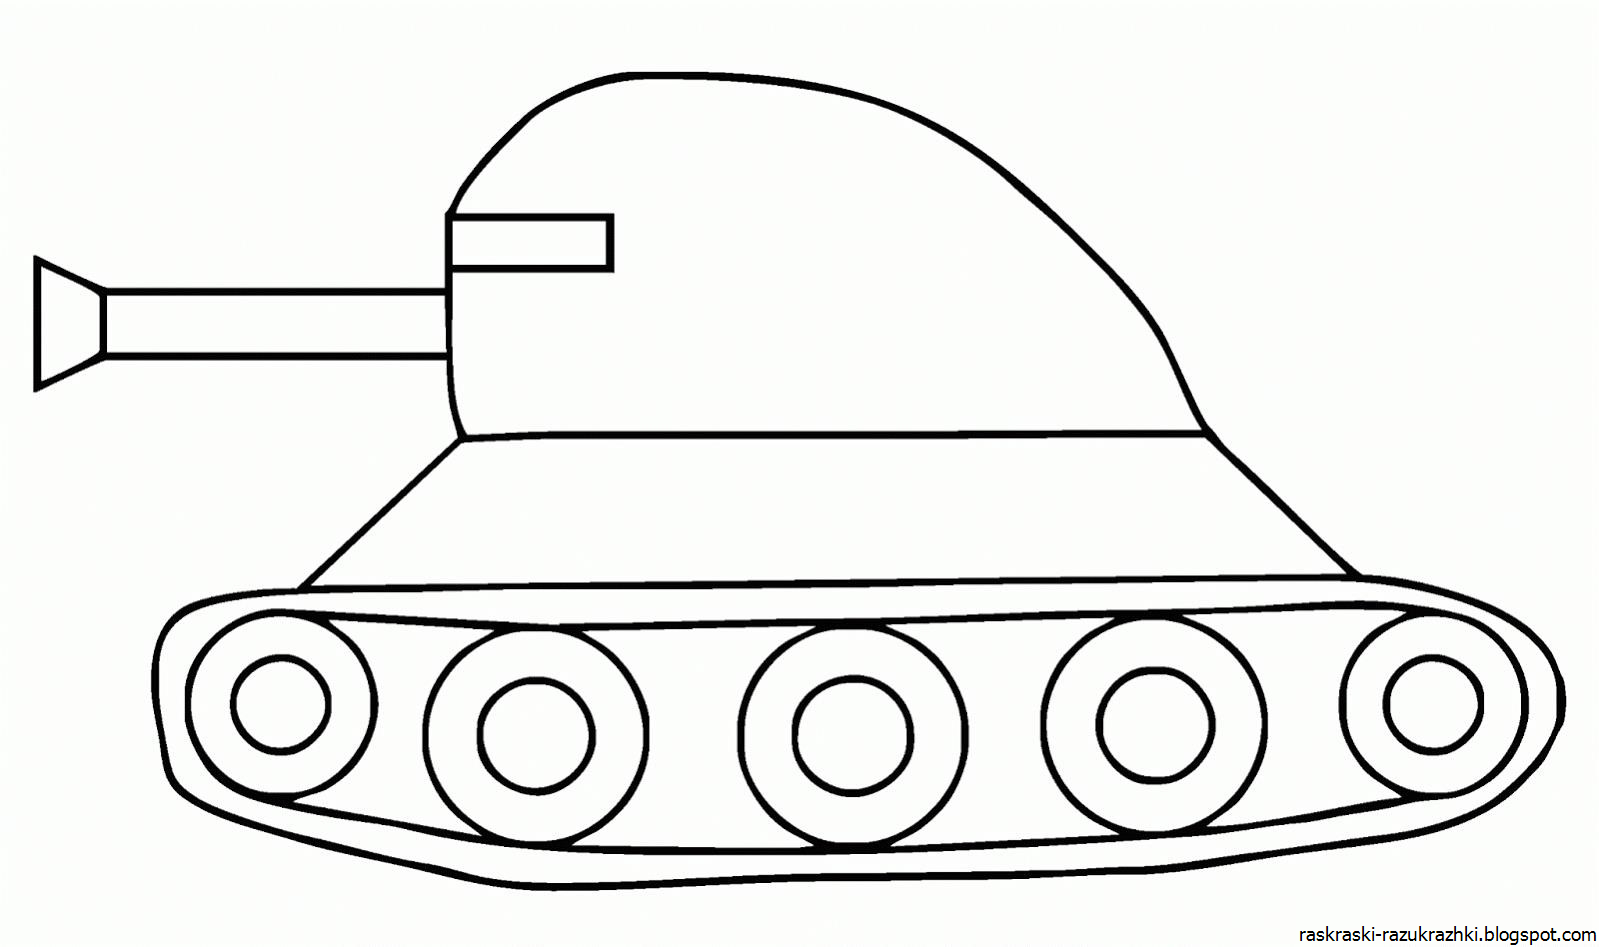 Раскраска танк для детей 4 5. Раскраска танк. Танк раскраска для малышей. Раскраска танки для детей. Трафарет танка для рисования.